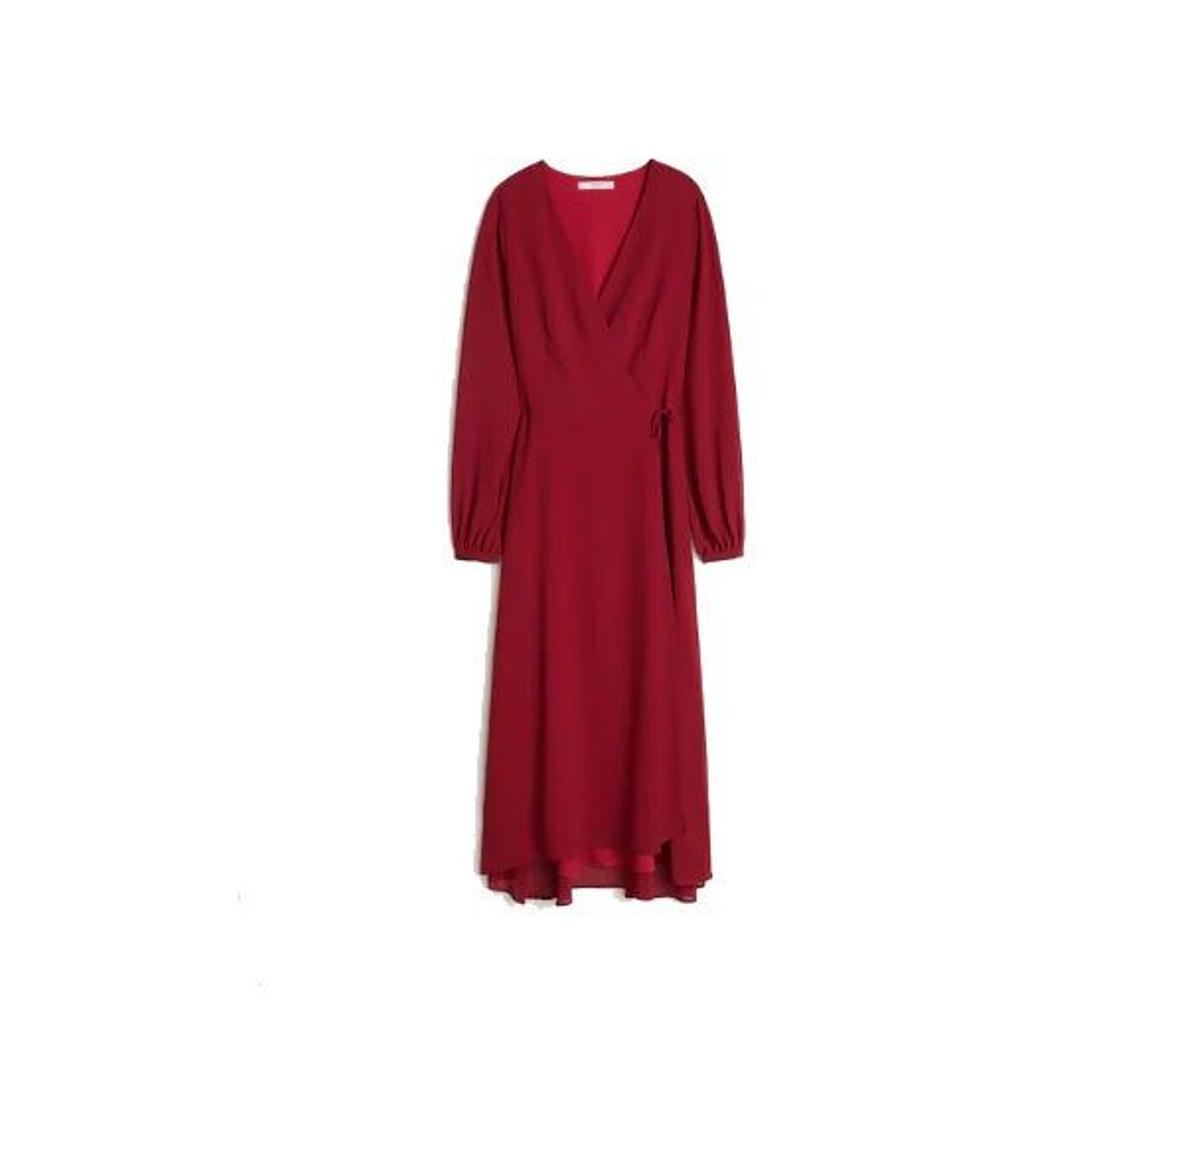 Vestido rojo de Mango. (Precio: 49, 99 euros)